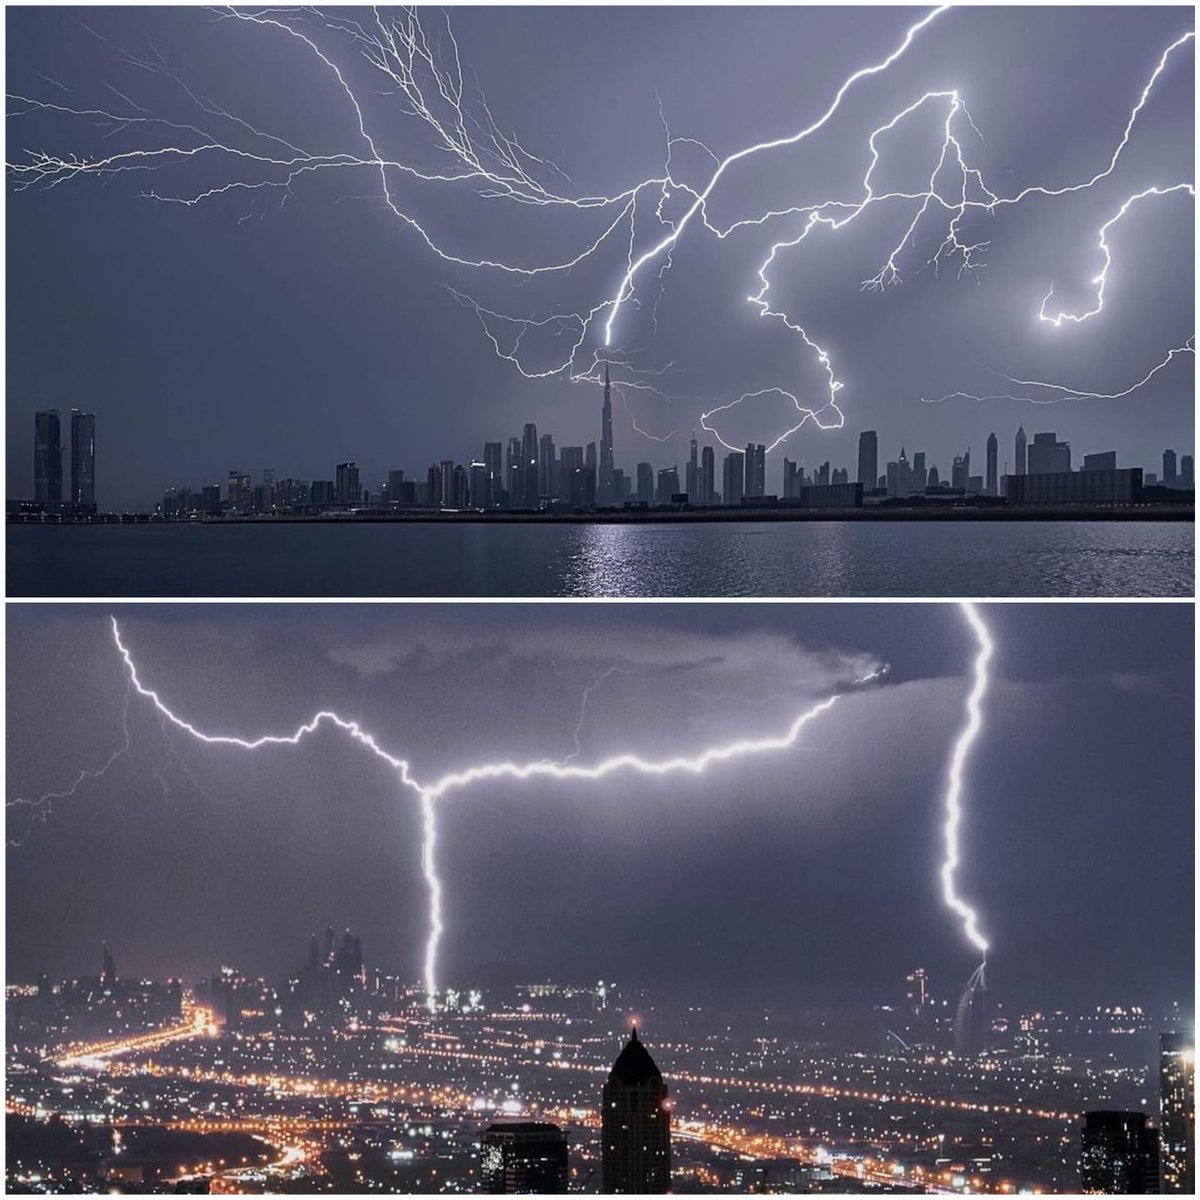 دبئی میں کل کی بارش میں آسمانی بجلی چمکنے کے مناظر……📷
#rainyday
#storm
#dubailife
#lighting
#flood
#sky
#viral
#instagram
#Twitter
#facebookviral
#whatsappstatus